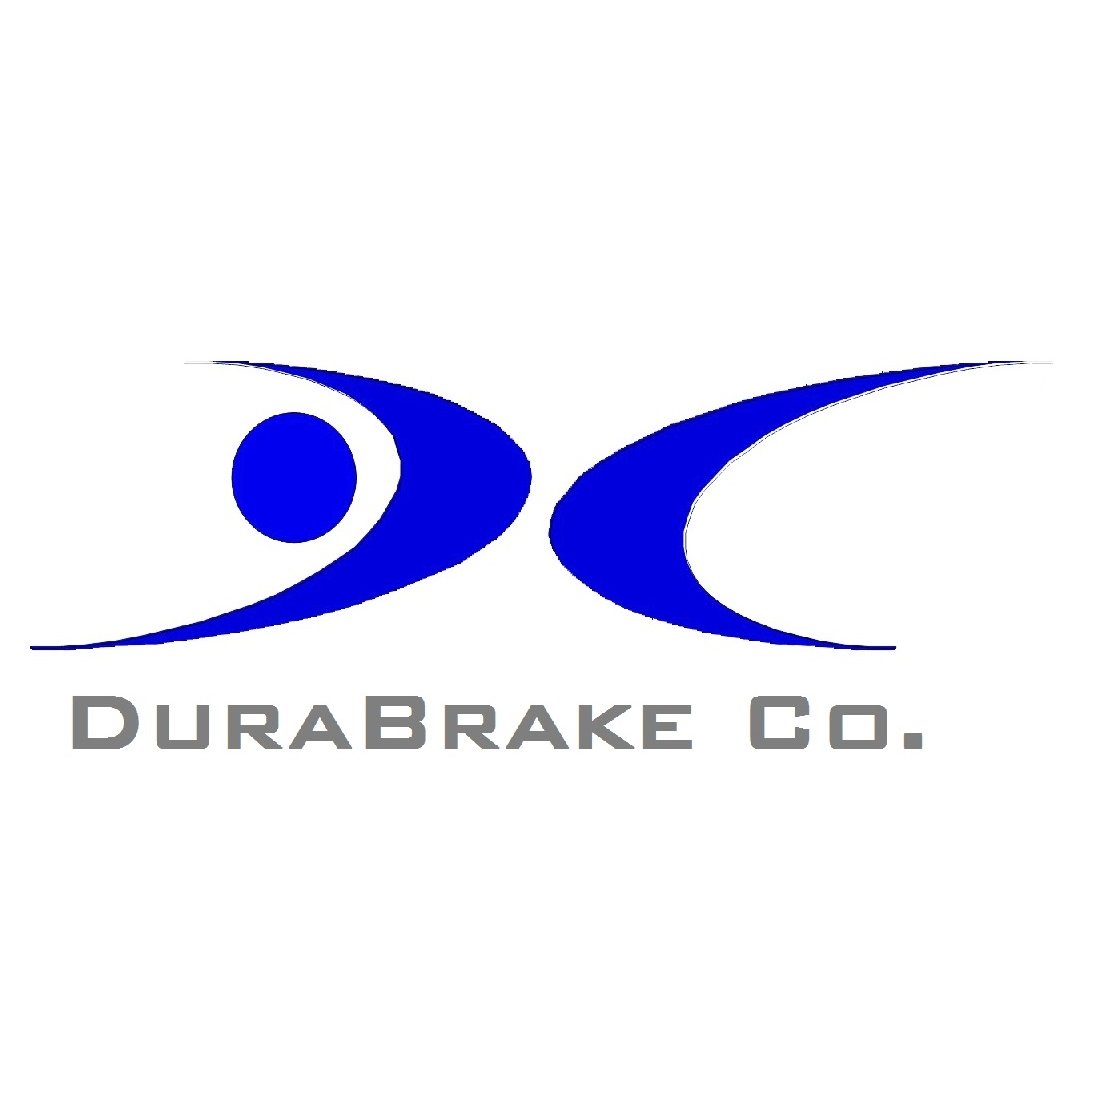 Durabrake logo